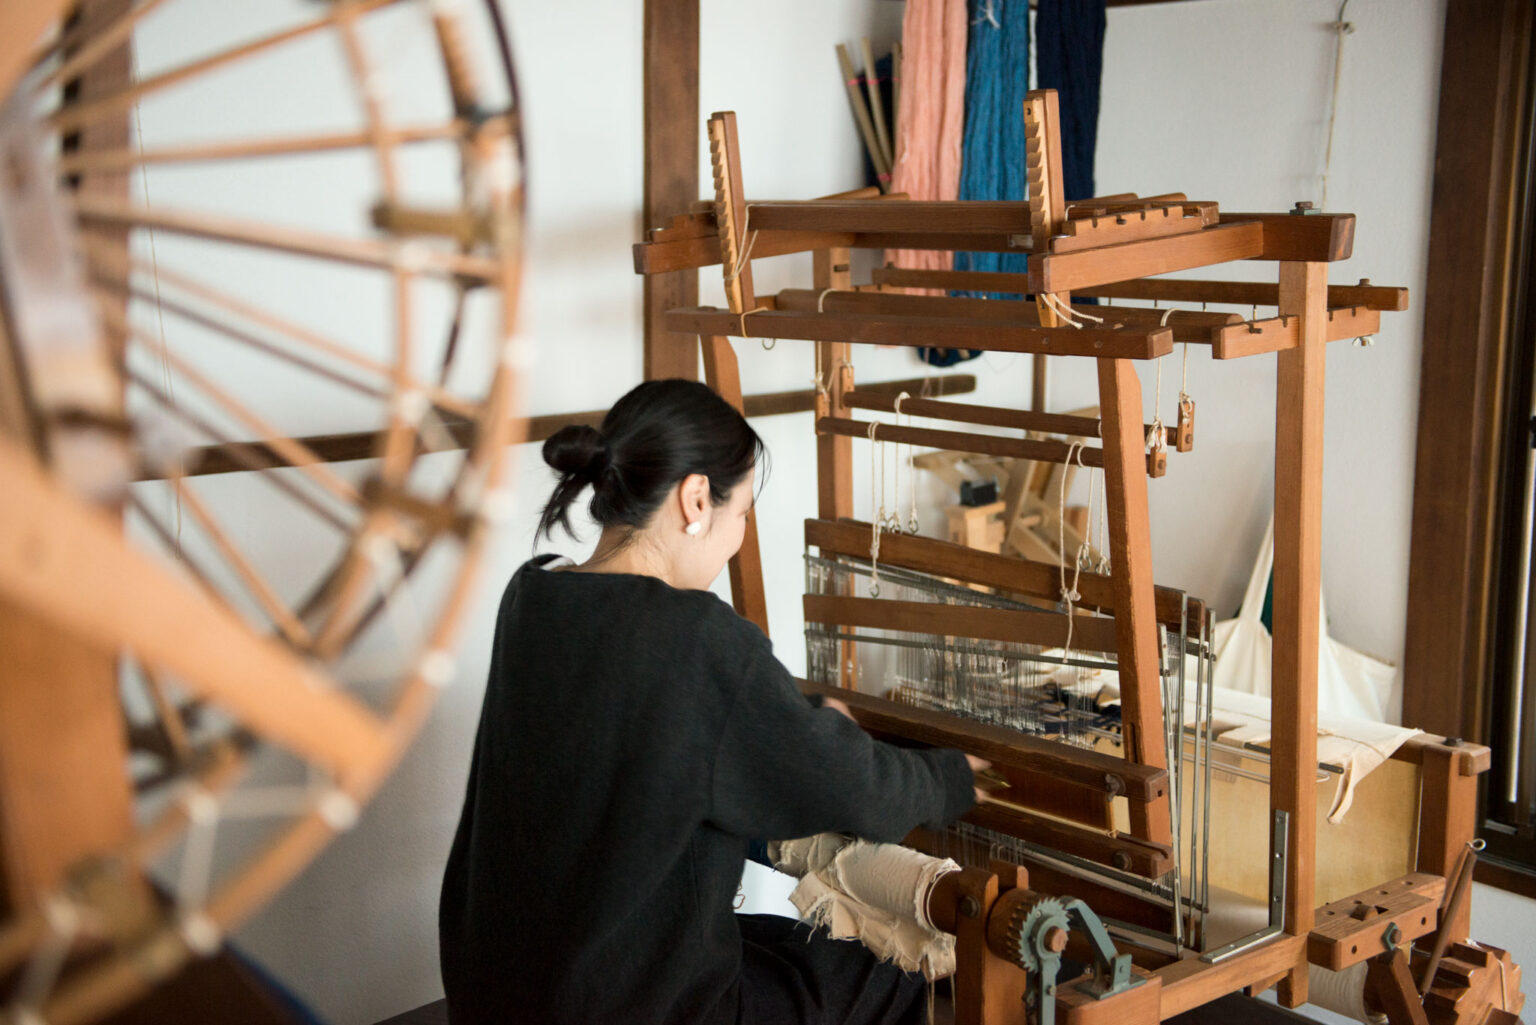 田原さんの自宅には機織り機が所狭しと2台。ここで織った椅子敷きも販売する。